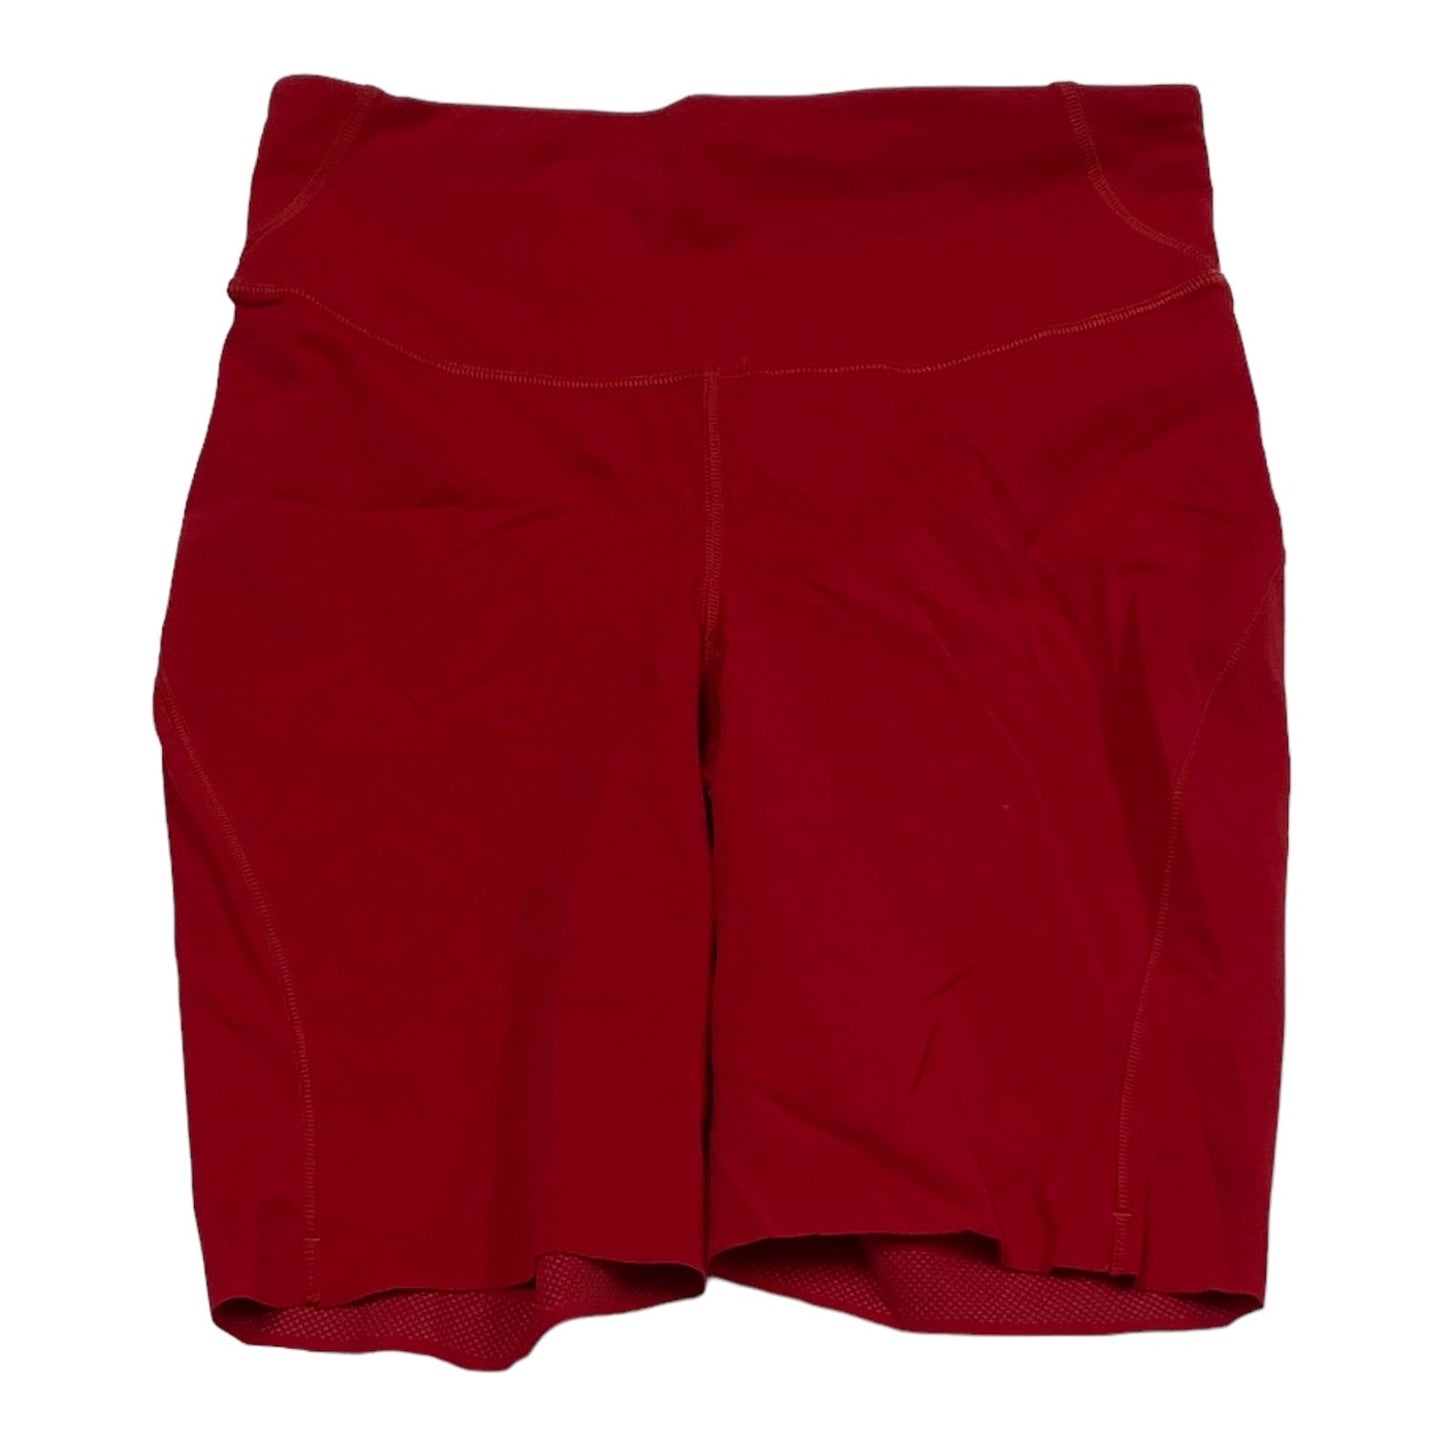 Red Shorts Lululemon, Size 6